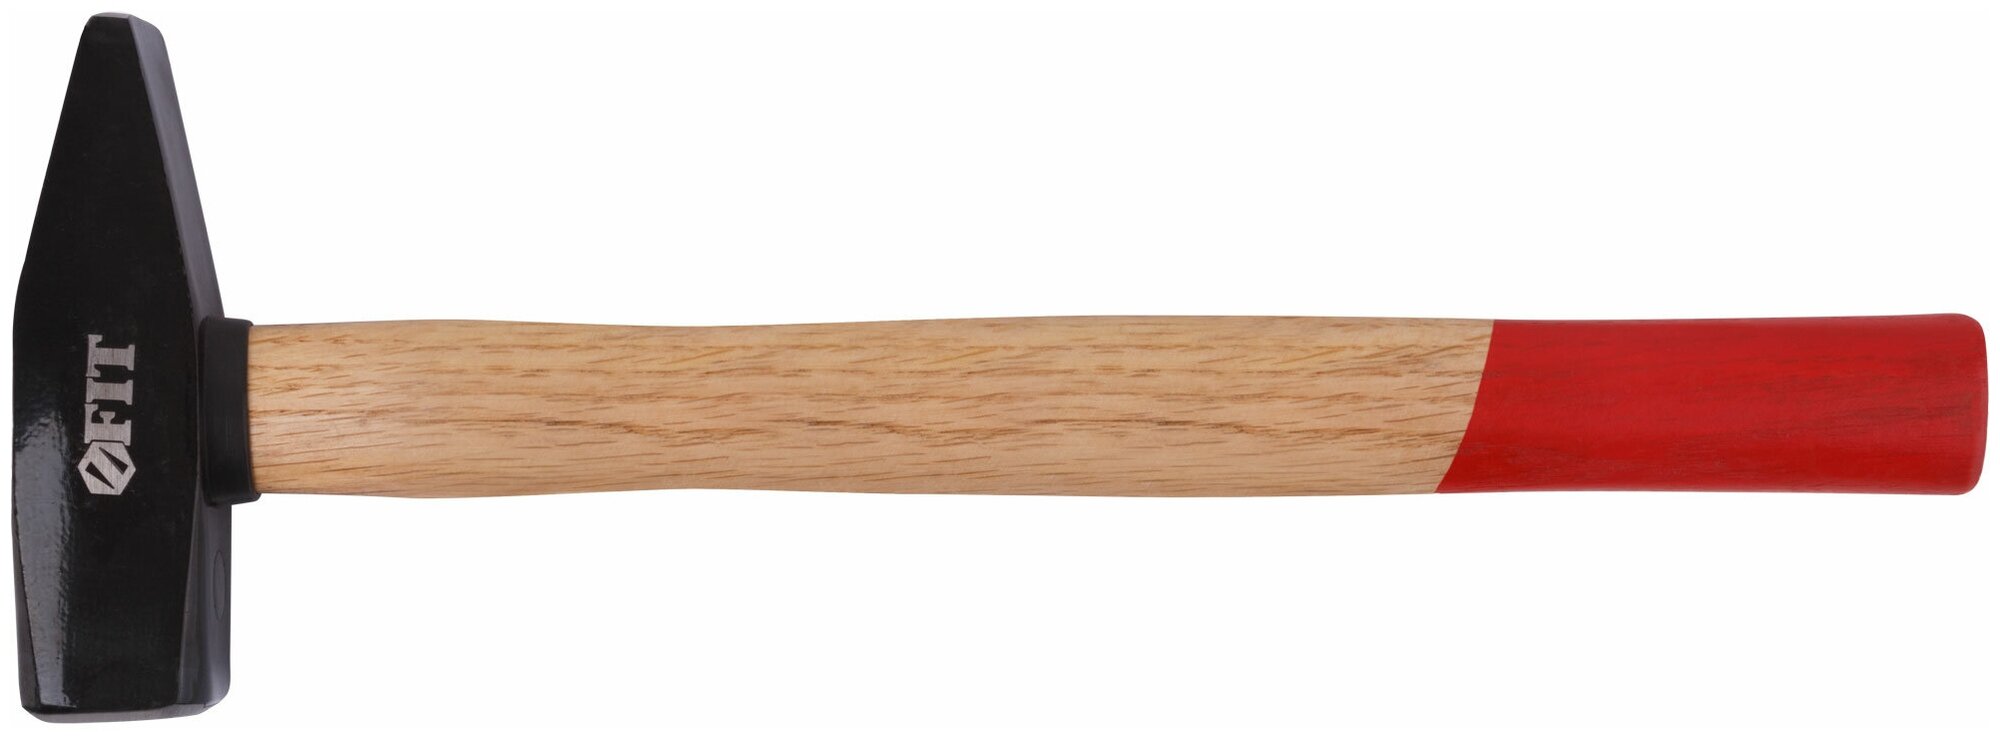 Молоток кованый, деревянная ручка 800 гр. 44208